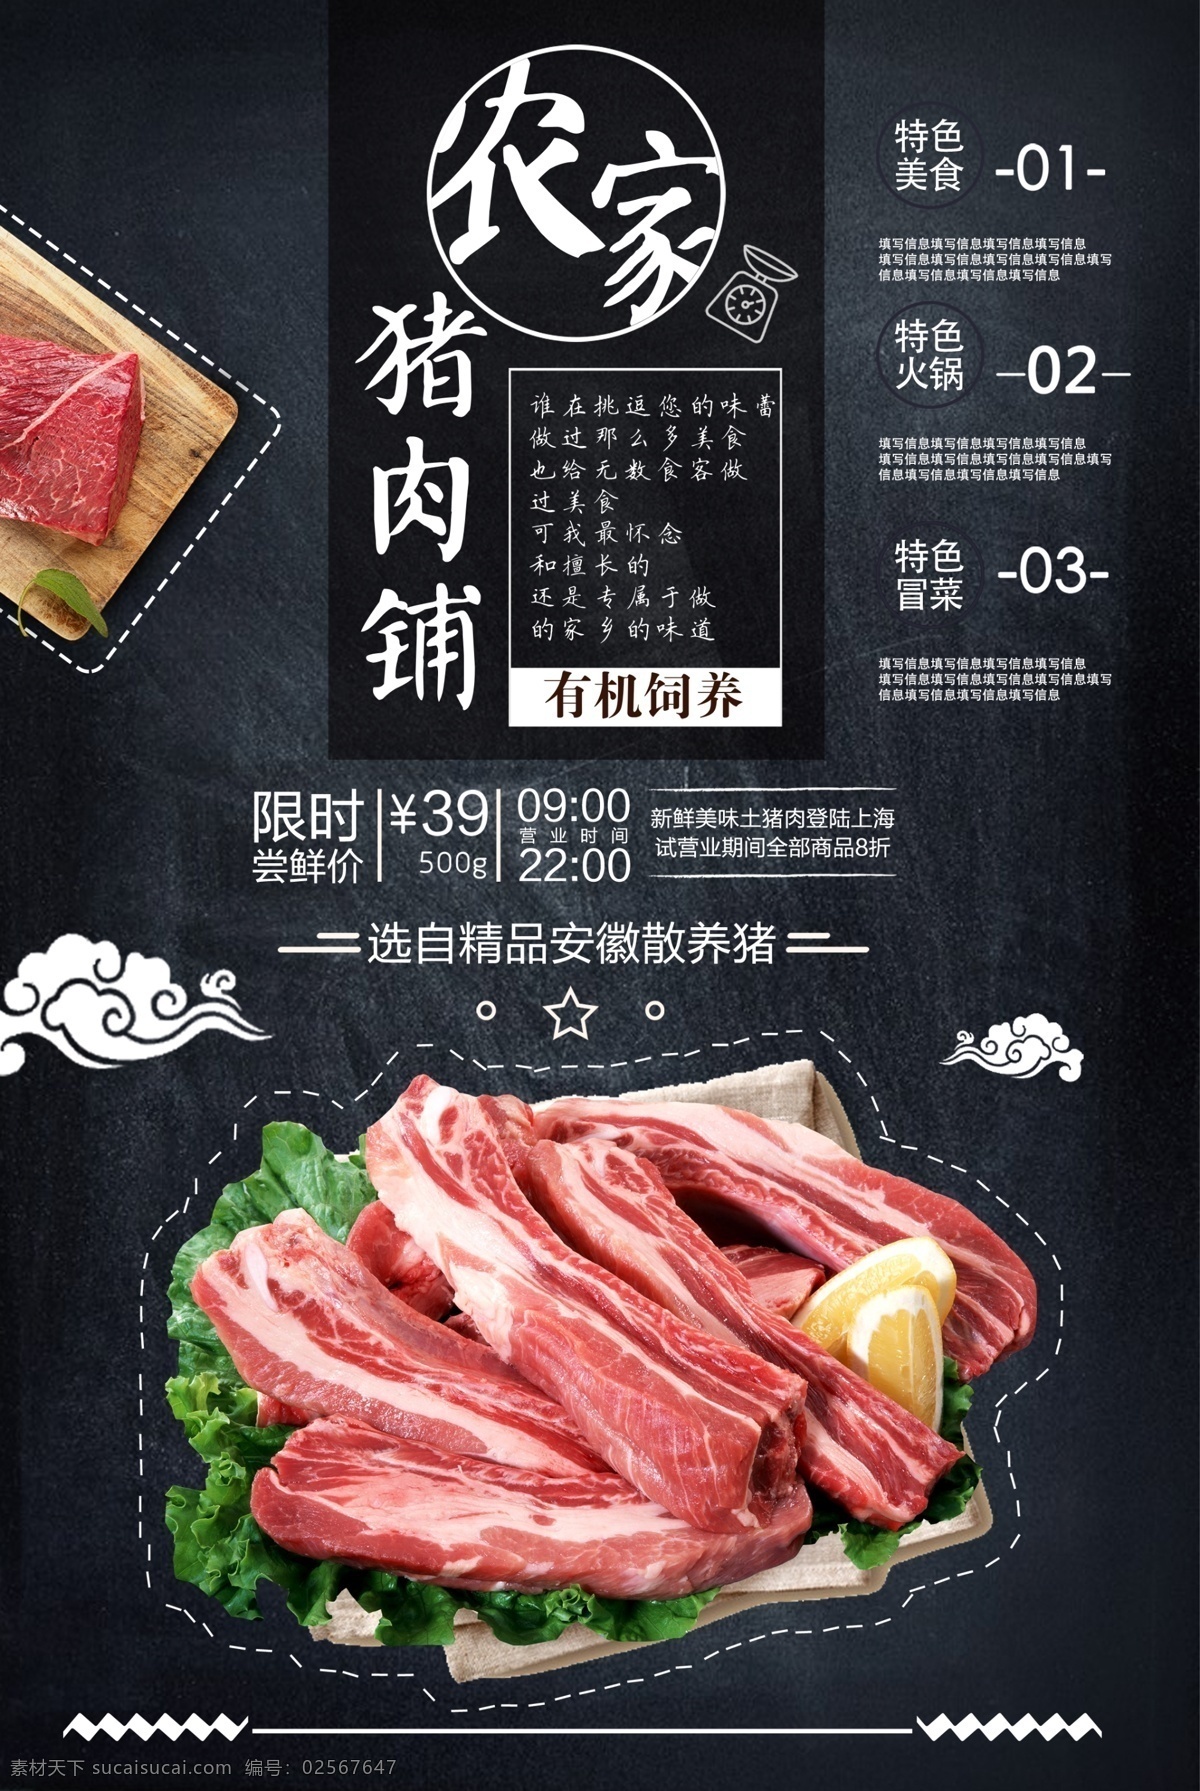 猪肉铺海报 猪肉铺 美食 瘦肉 猪肉店海报 精肉 农家 养殖 国内广告设计